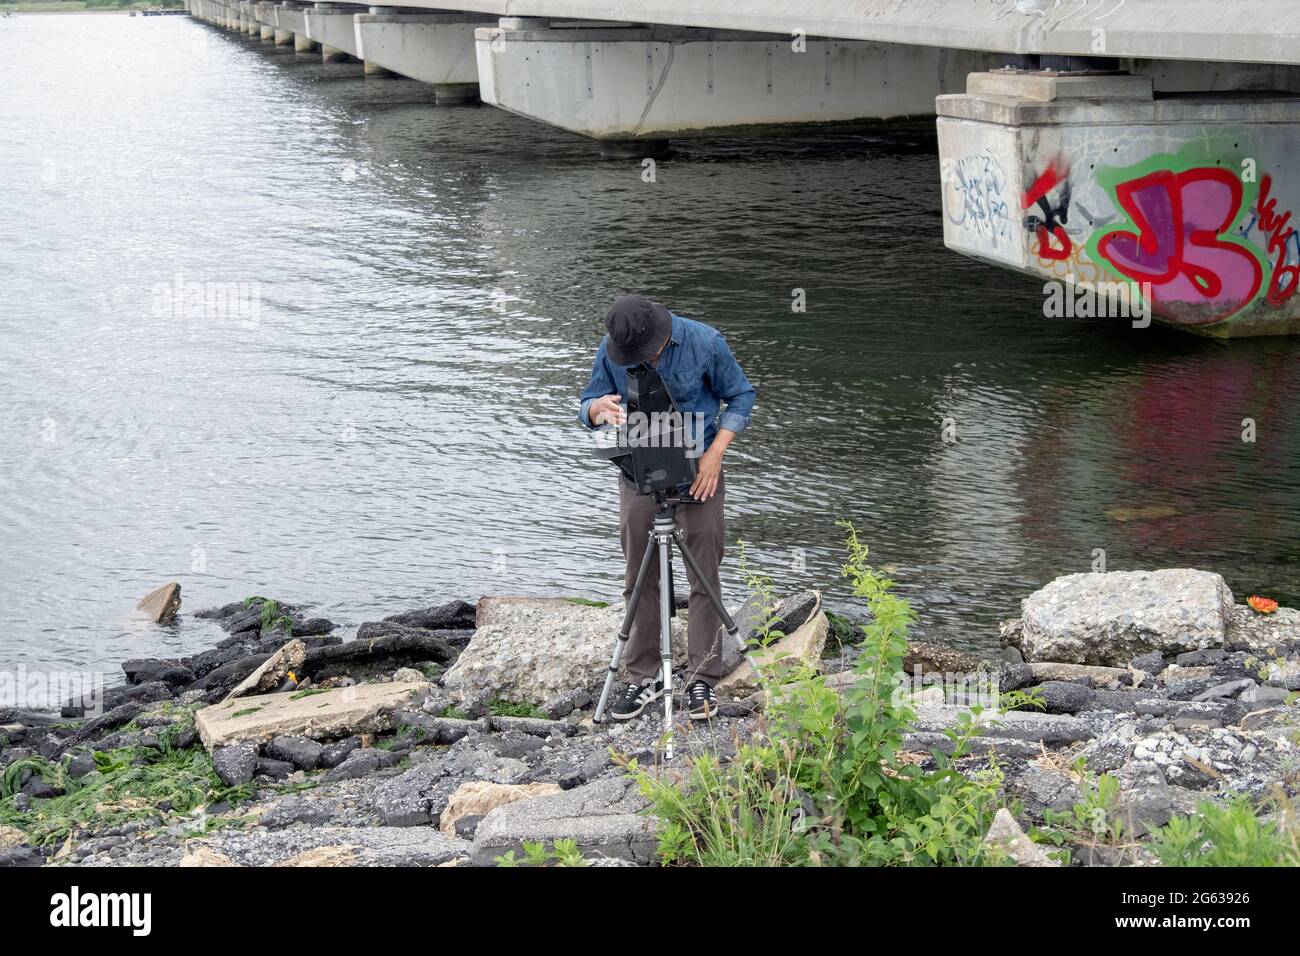 Un photographe de paysage d'ancienne école utilisant un appareil photo grand format Graflex prend des photos à Jamaica Bay à Queens, New York City. Banque D'Images